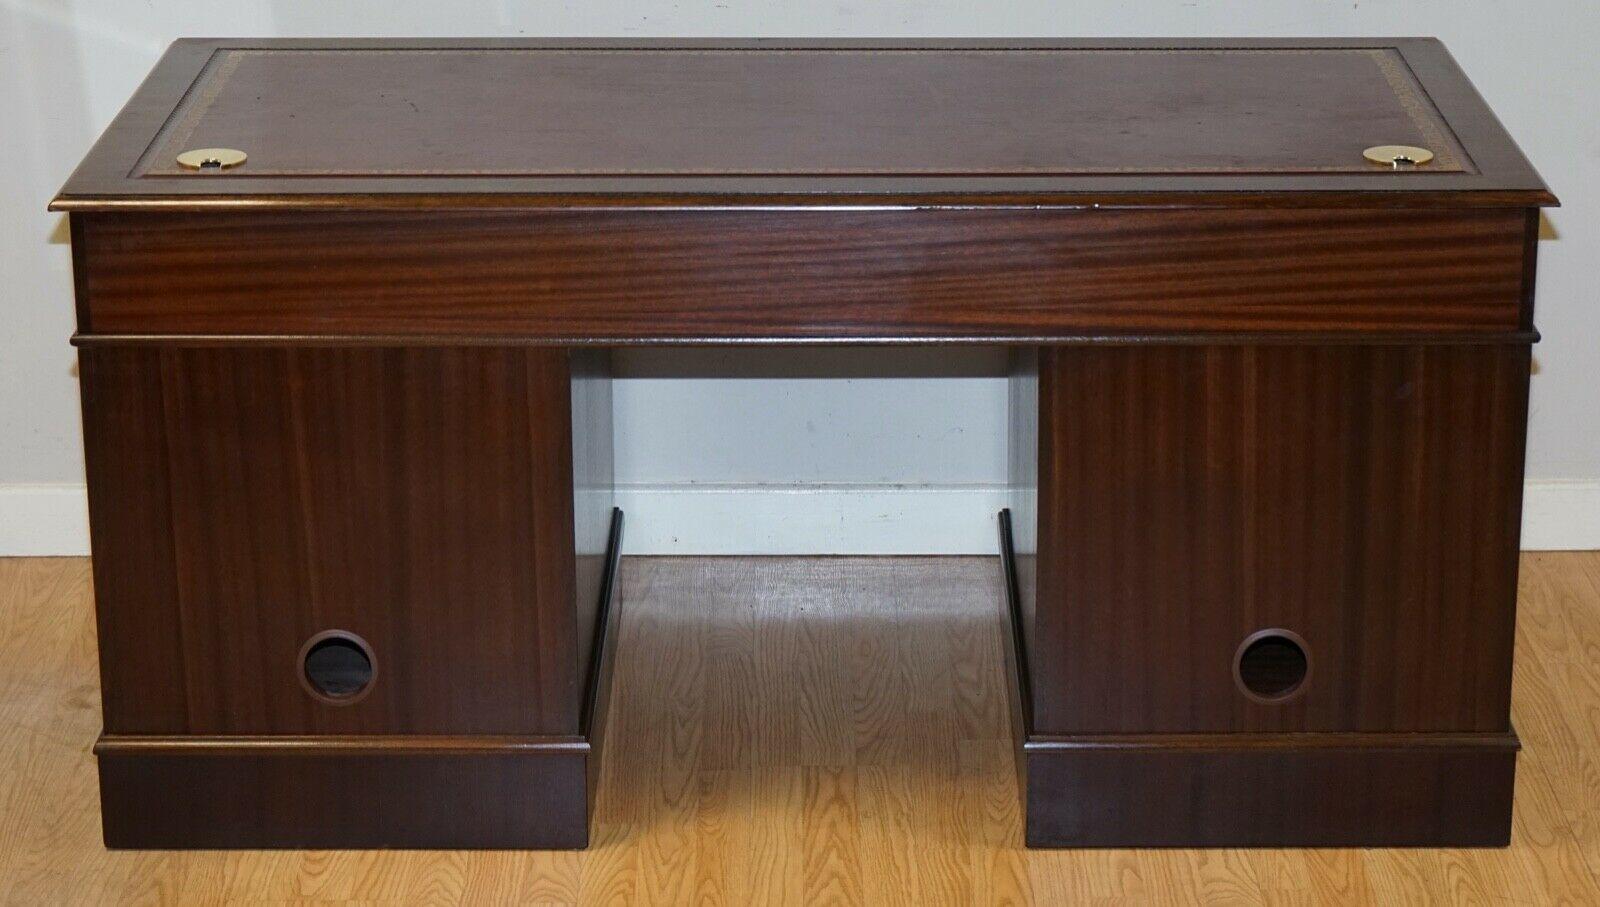 Hardwood Twin Pedestal Partner Desk Leather Top Designed to House Computer 8